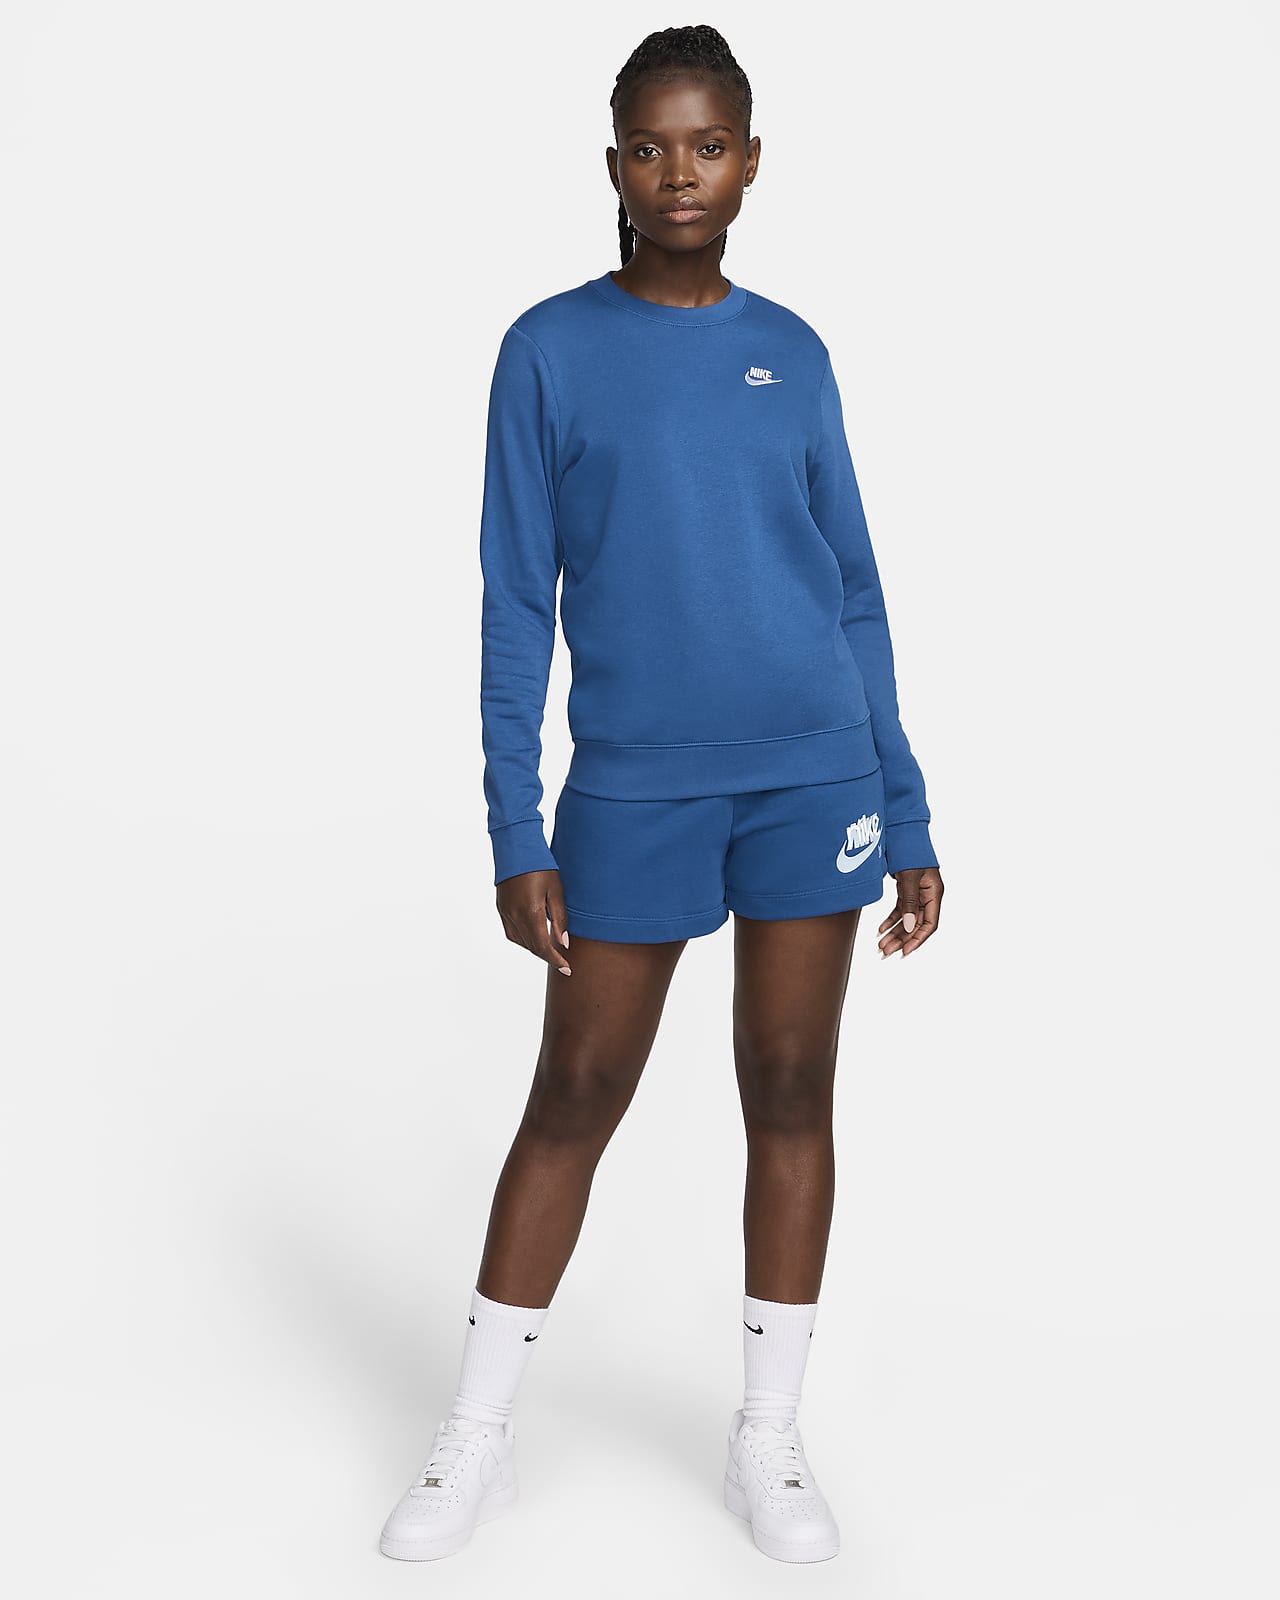 Crew-Neck Fleece Club Nike Sweatshirt. Women\'s Sportswear